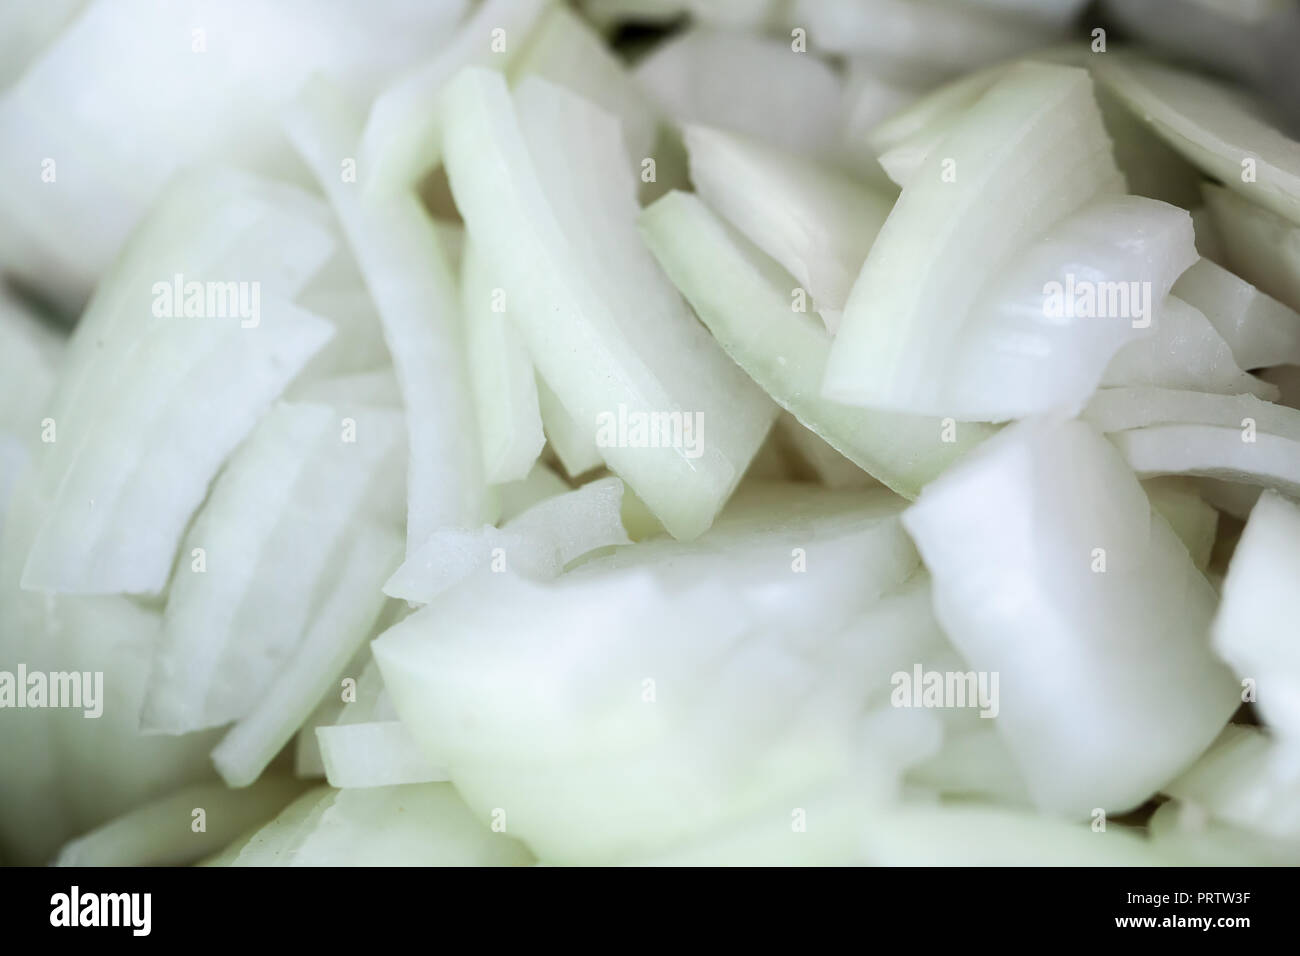 Stapel von geschnittenen weißen Zwiebeln, beliebte Lebensmittelzutat Stockfoto